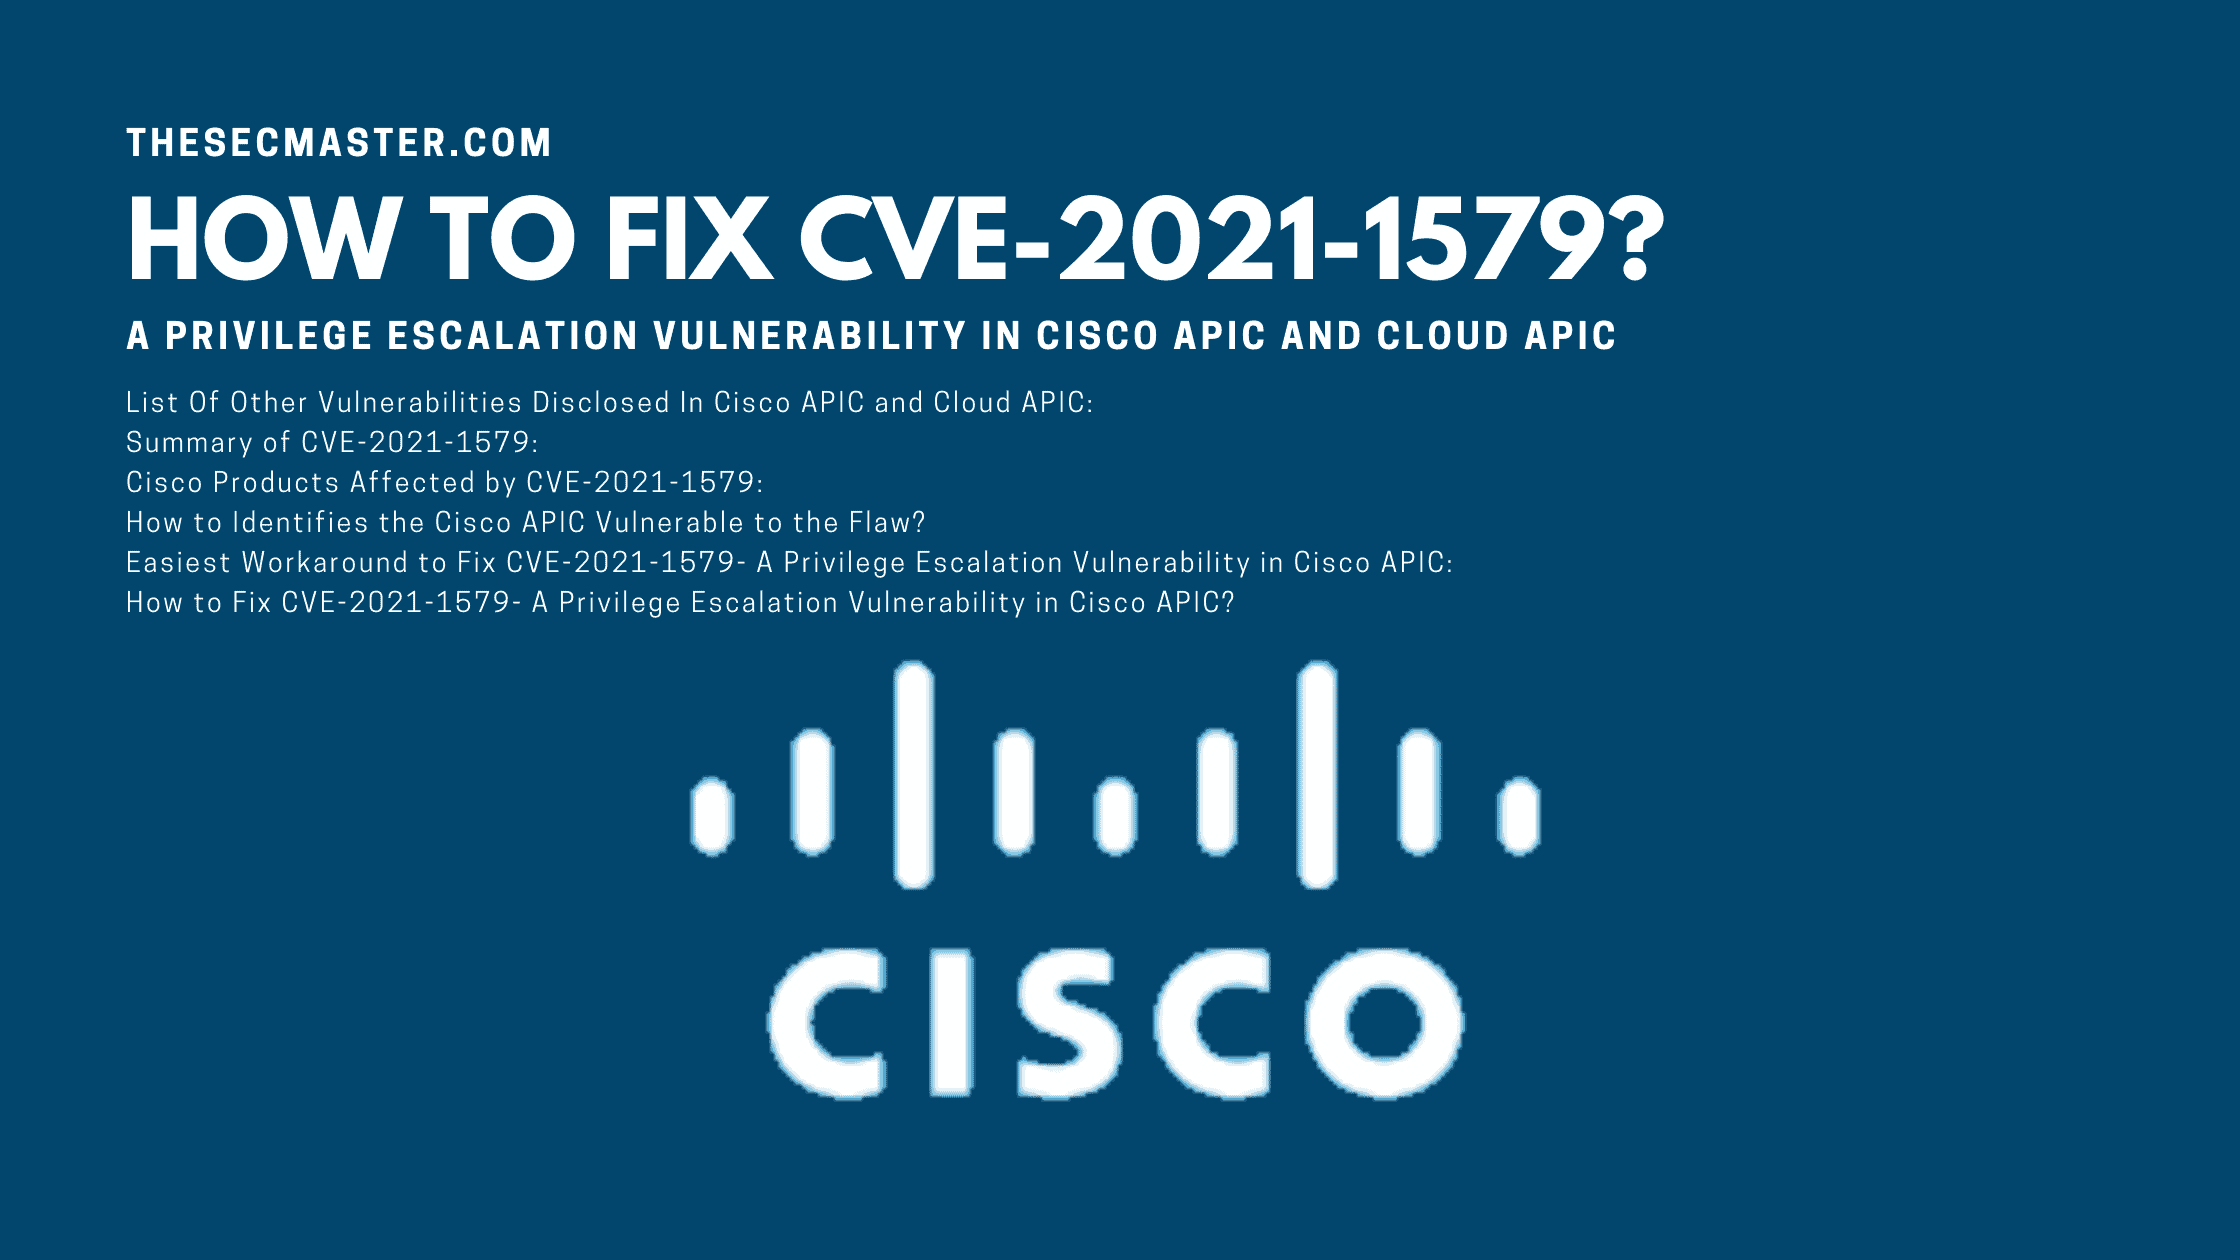 How To Fix Cve 2021 1579 A Privilege Escalation Vulnerability In Cisco Apic